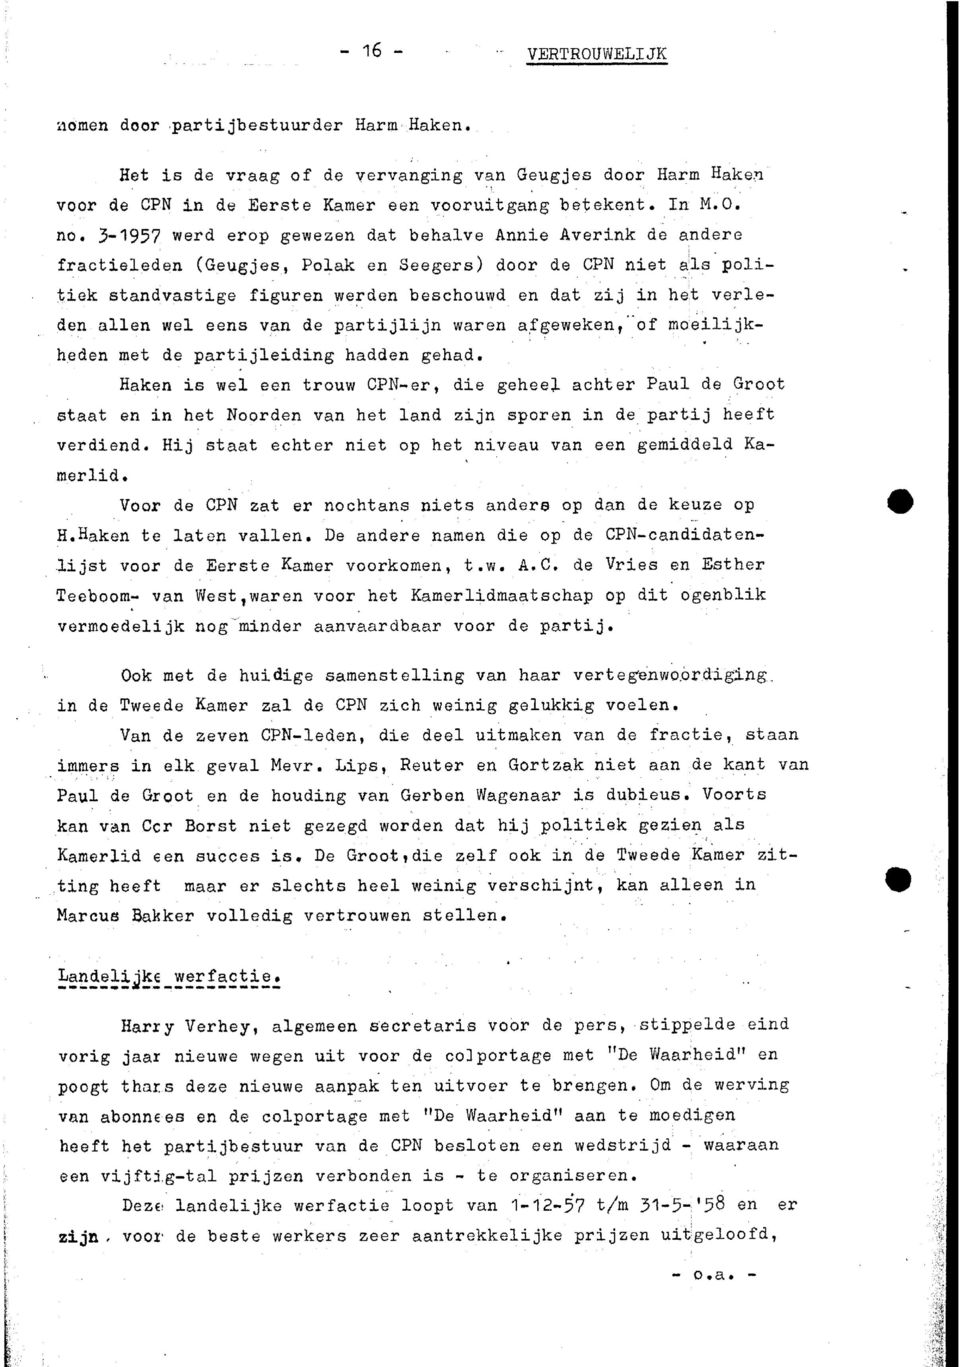 3-1957 werd erop gewezen dat behalve Anne Avernk de andere fracteleden (Geugjes, Polak en Seegers) door de CPN net als poltek standvastge fguren werden beschouwd en dat zj n het verleden allen wel